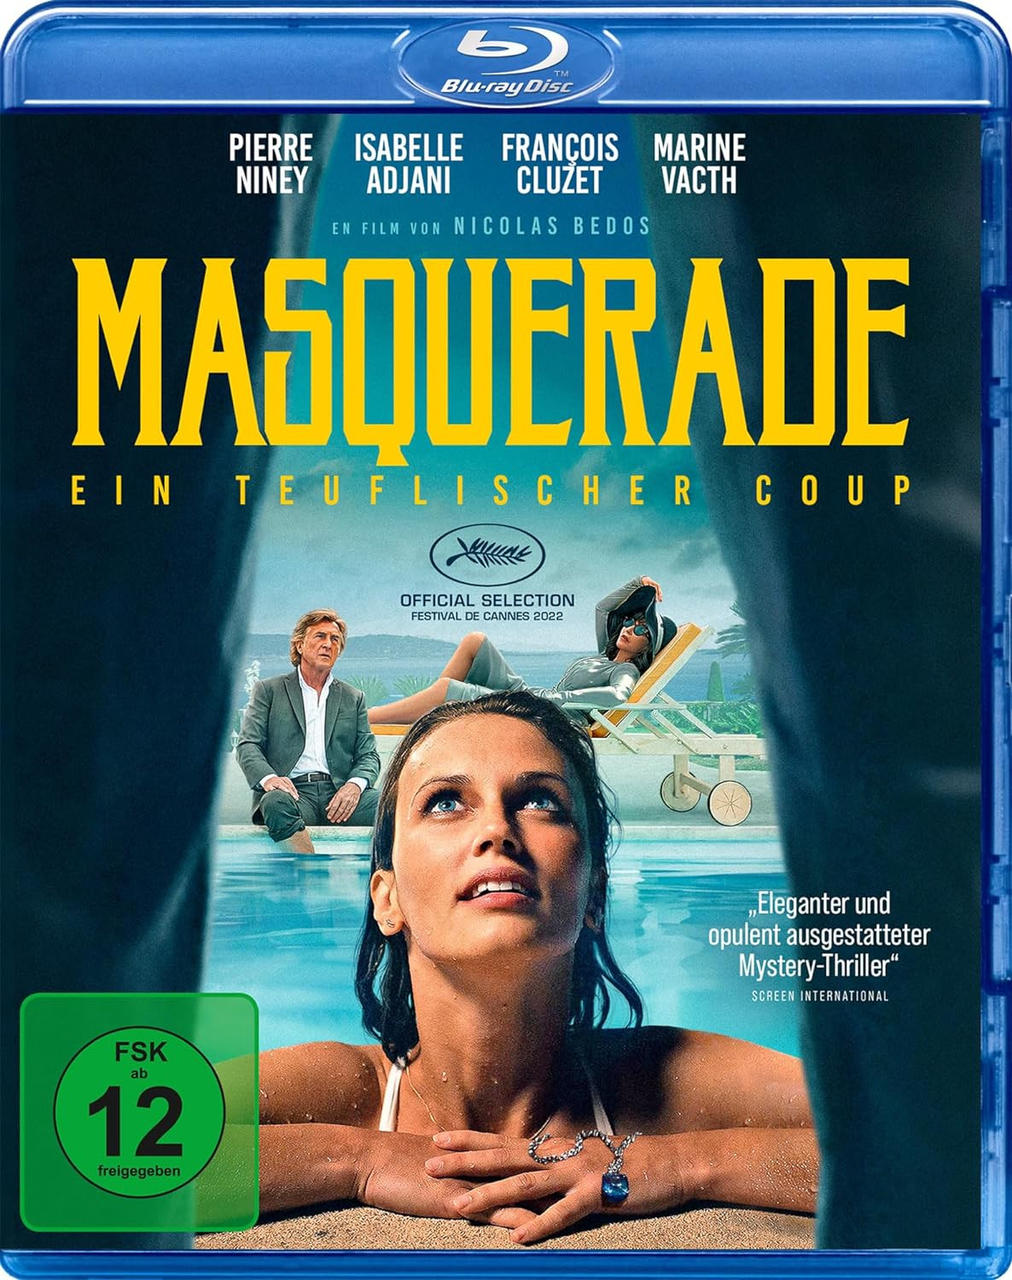 Blu-ray Masquerade Ein - Coup teuflischer